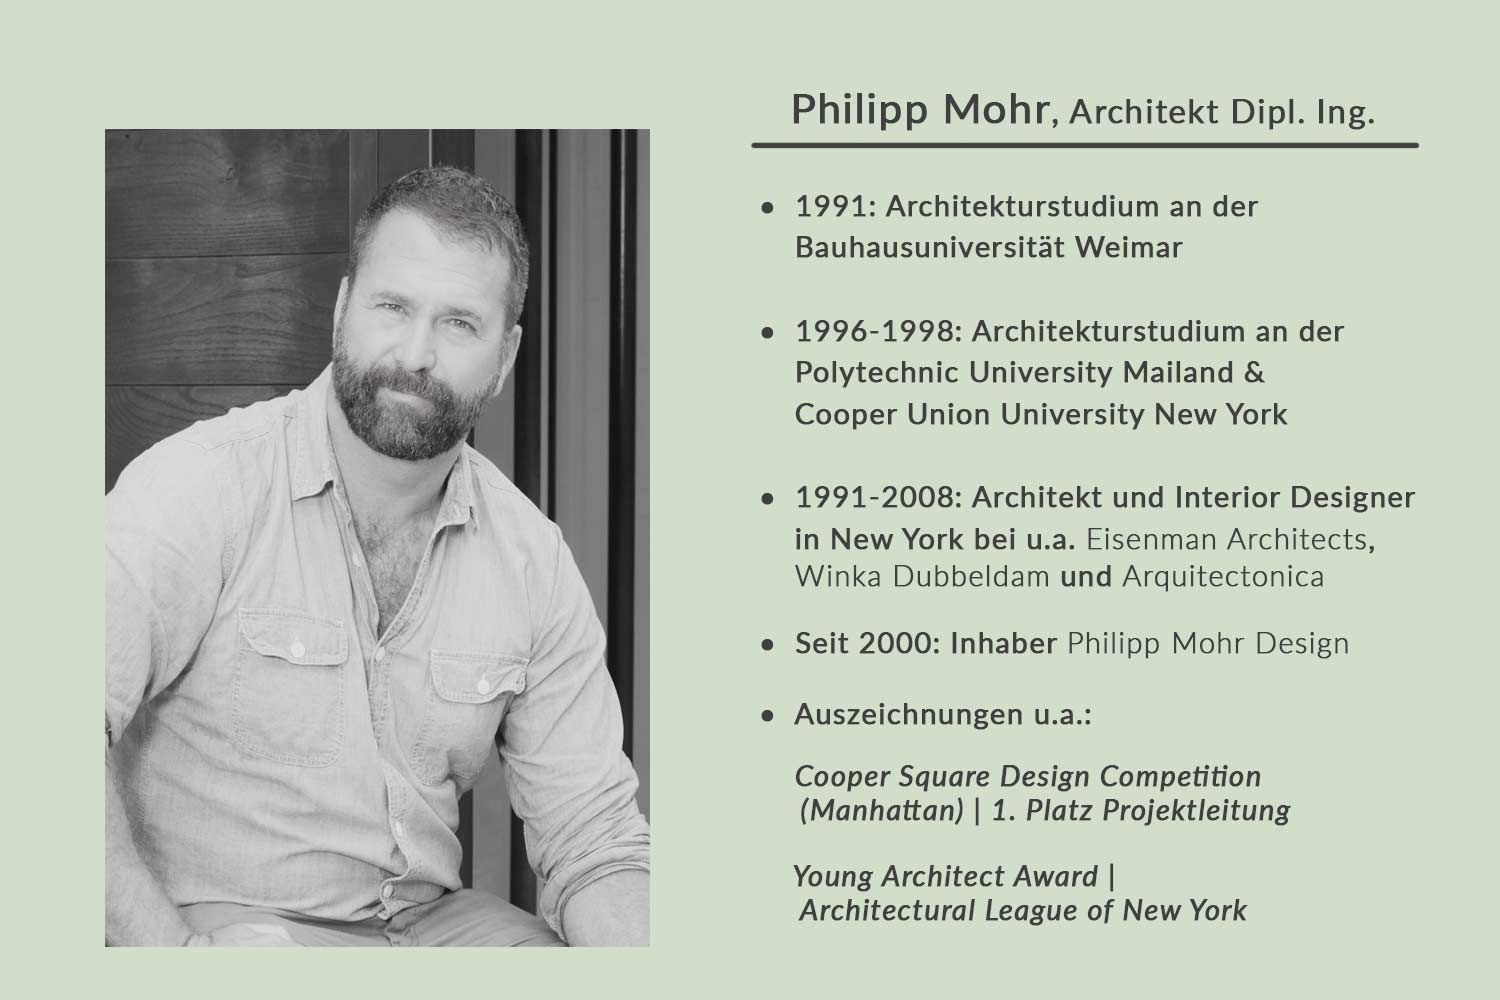 Lebenslauf des Architekten Philipp Mohr